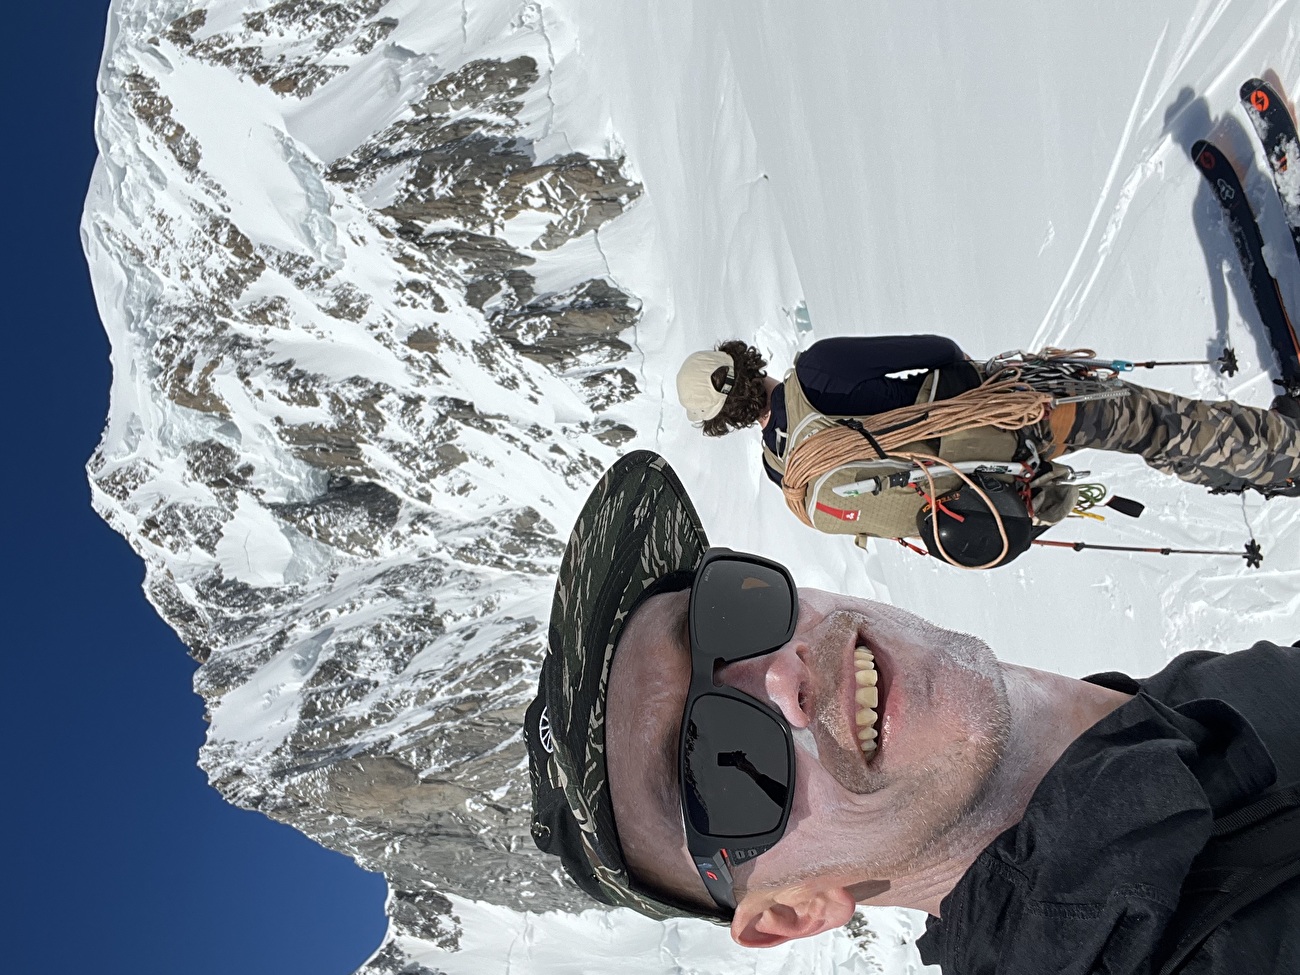 Mont Blanc Brenva Face - La Diagonale de la Brenva Face (Mont Blanc) skiée par Nico Borgeot, Gaspard Buro et Ross Hewitt